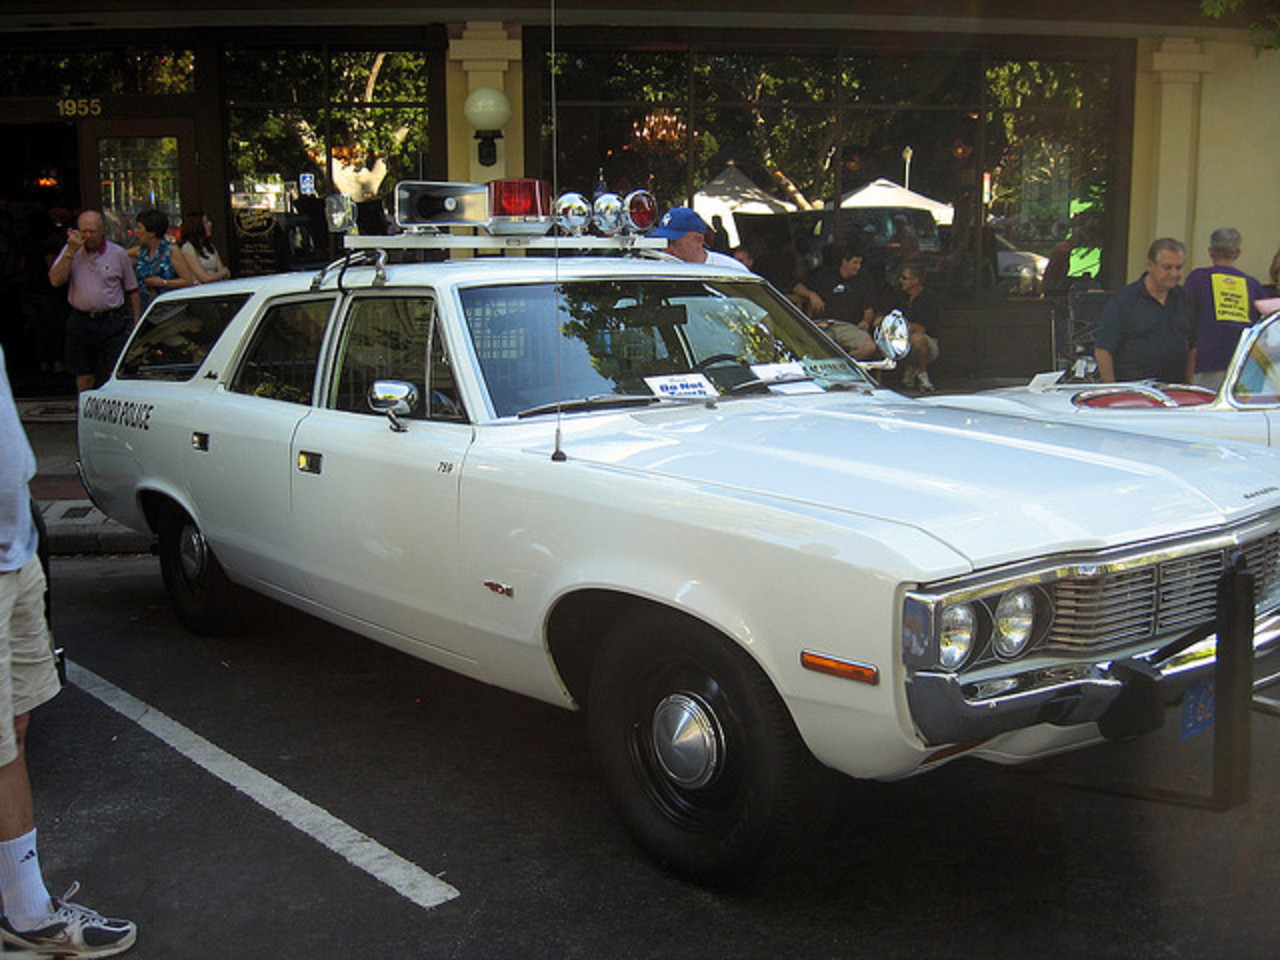 1972 AMC Matador Wagon Police Car | Flickr - Photo Sharing!